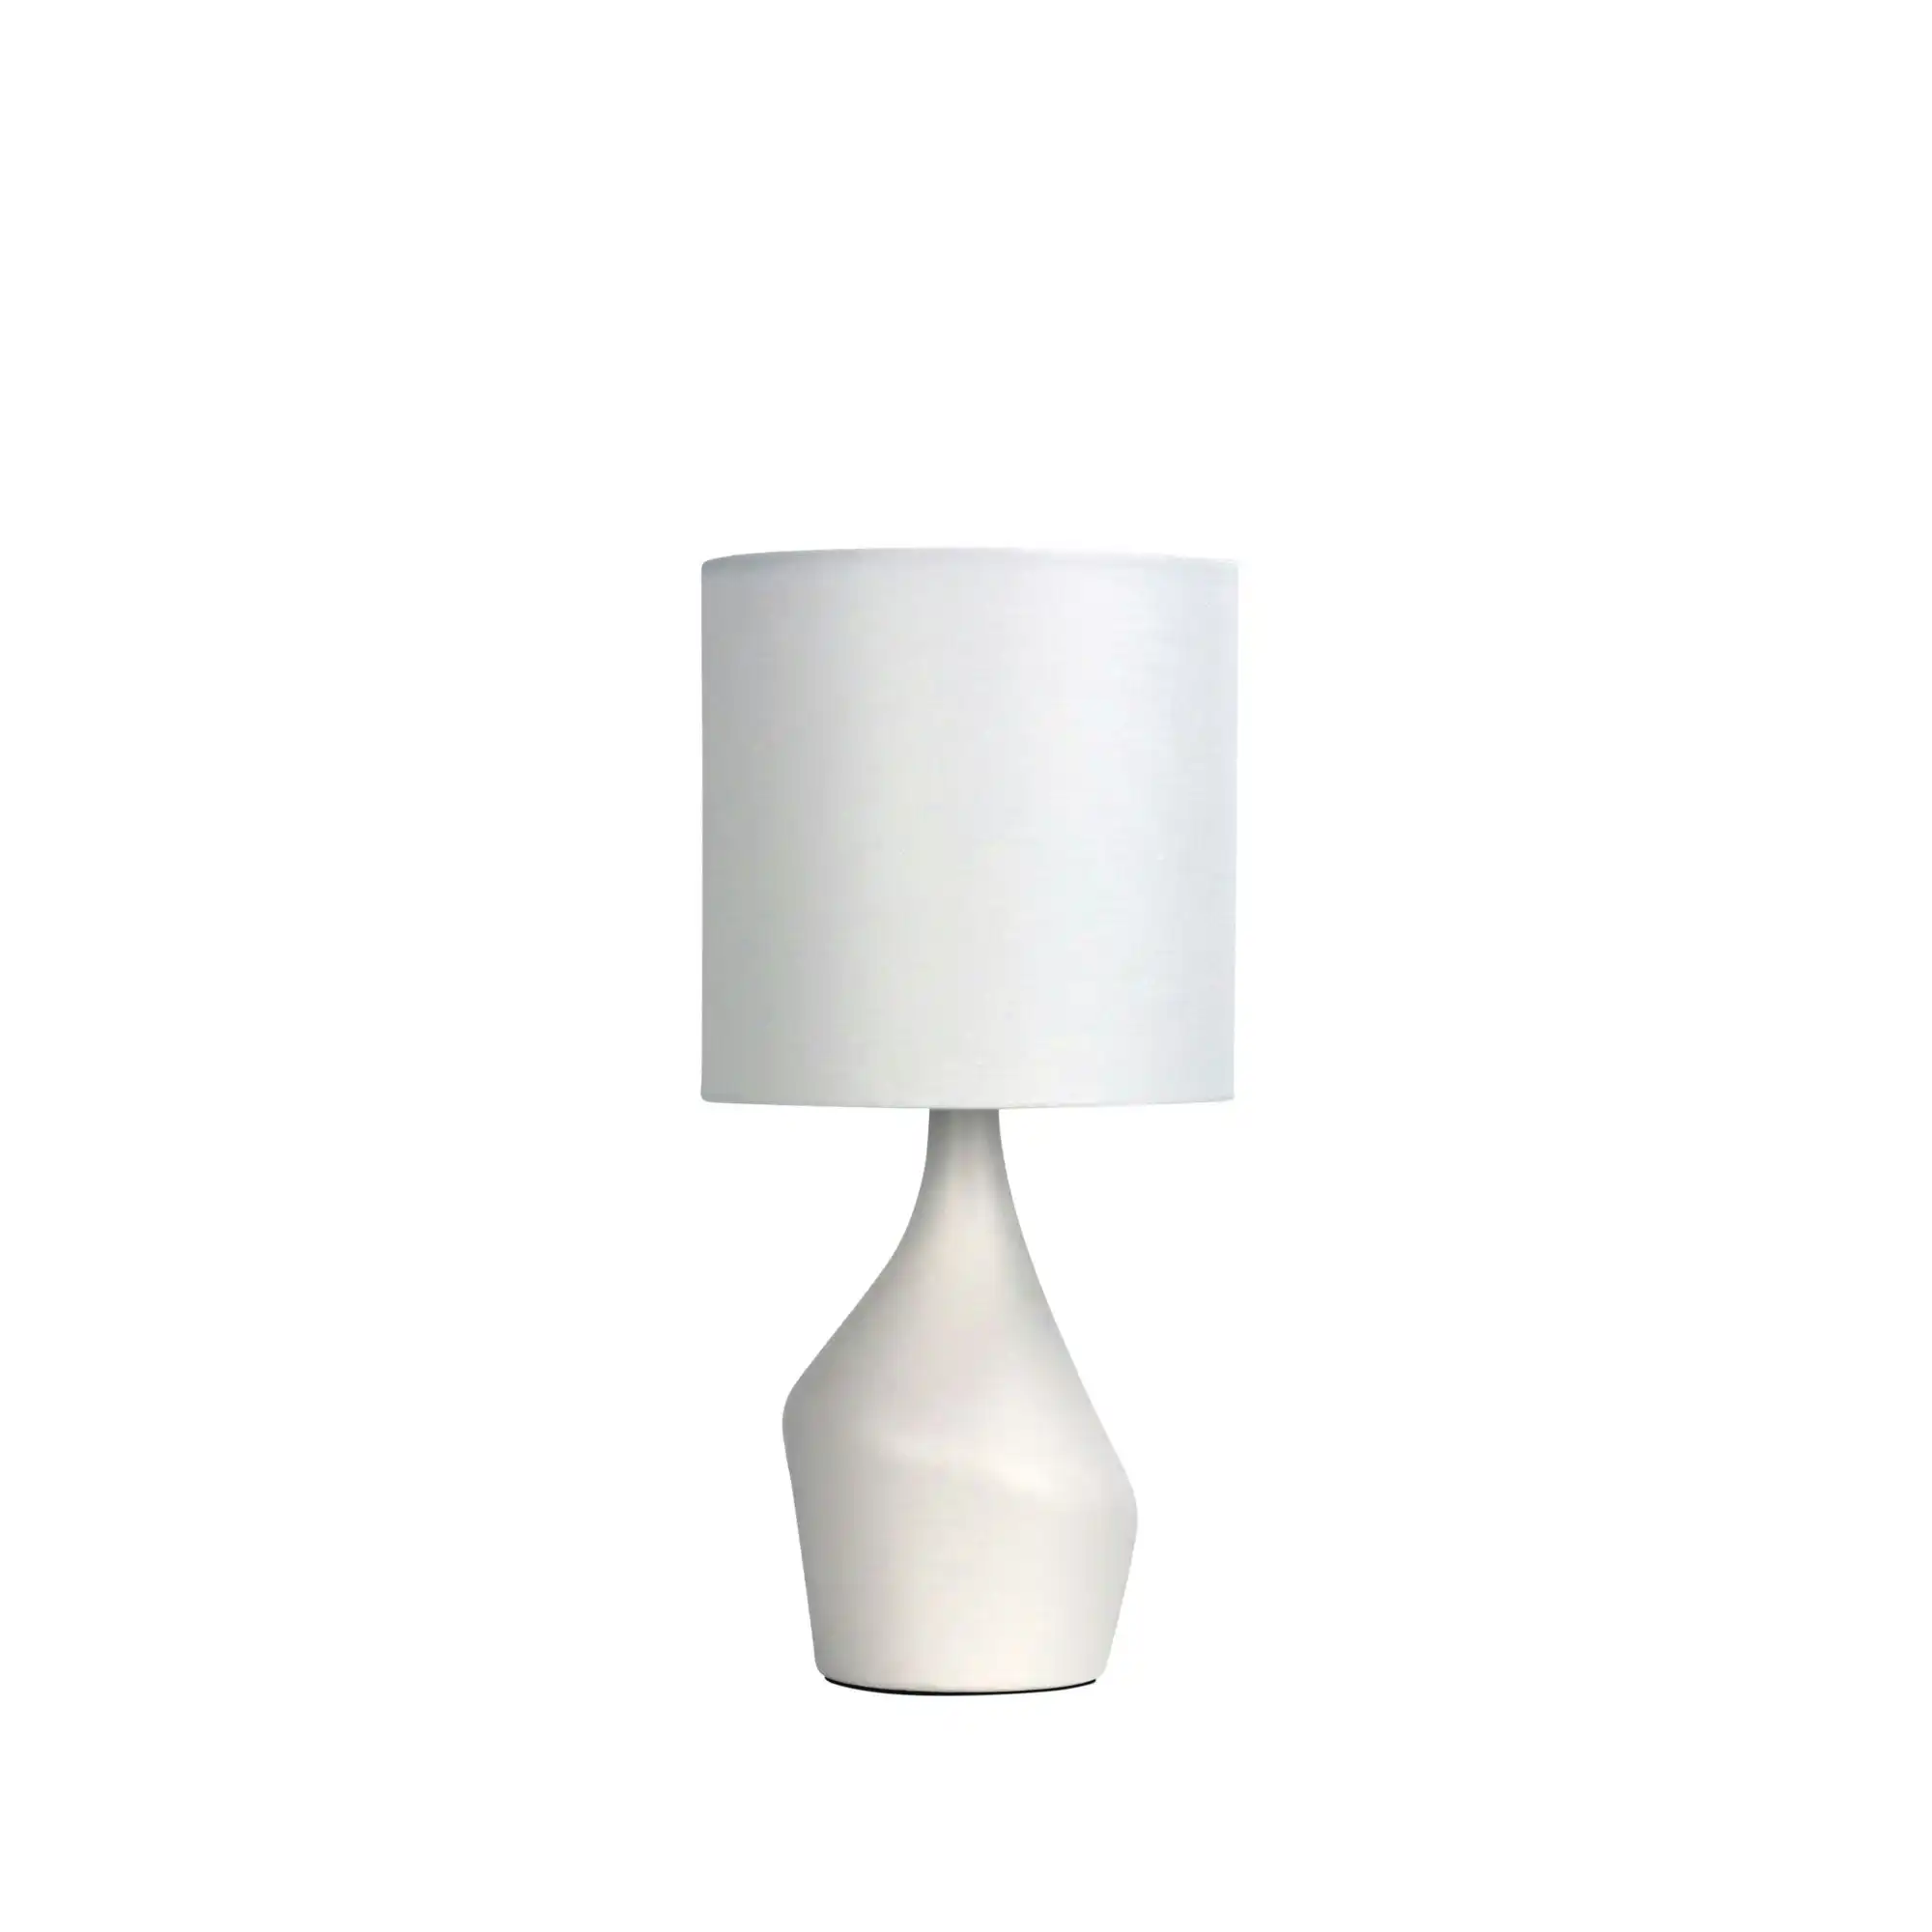 ZALE Complete Lamp